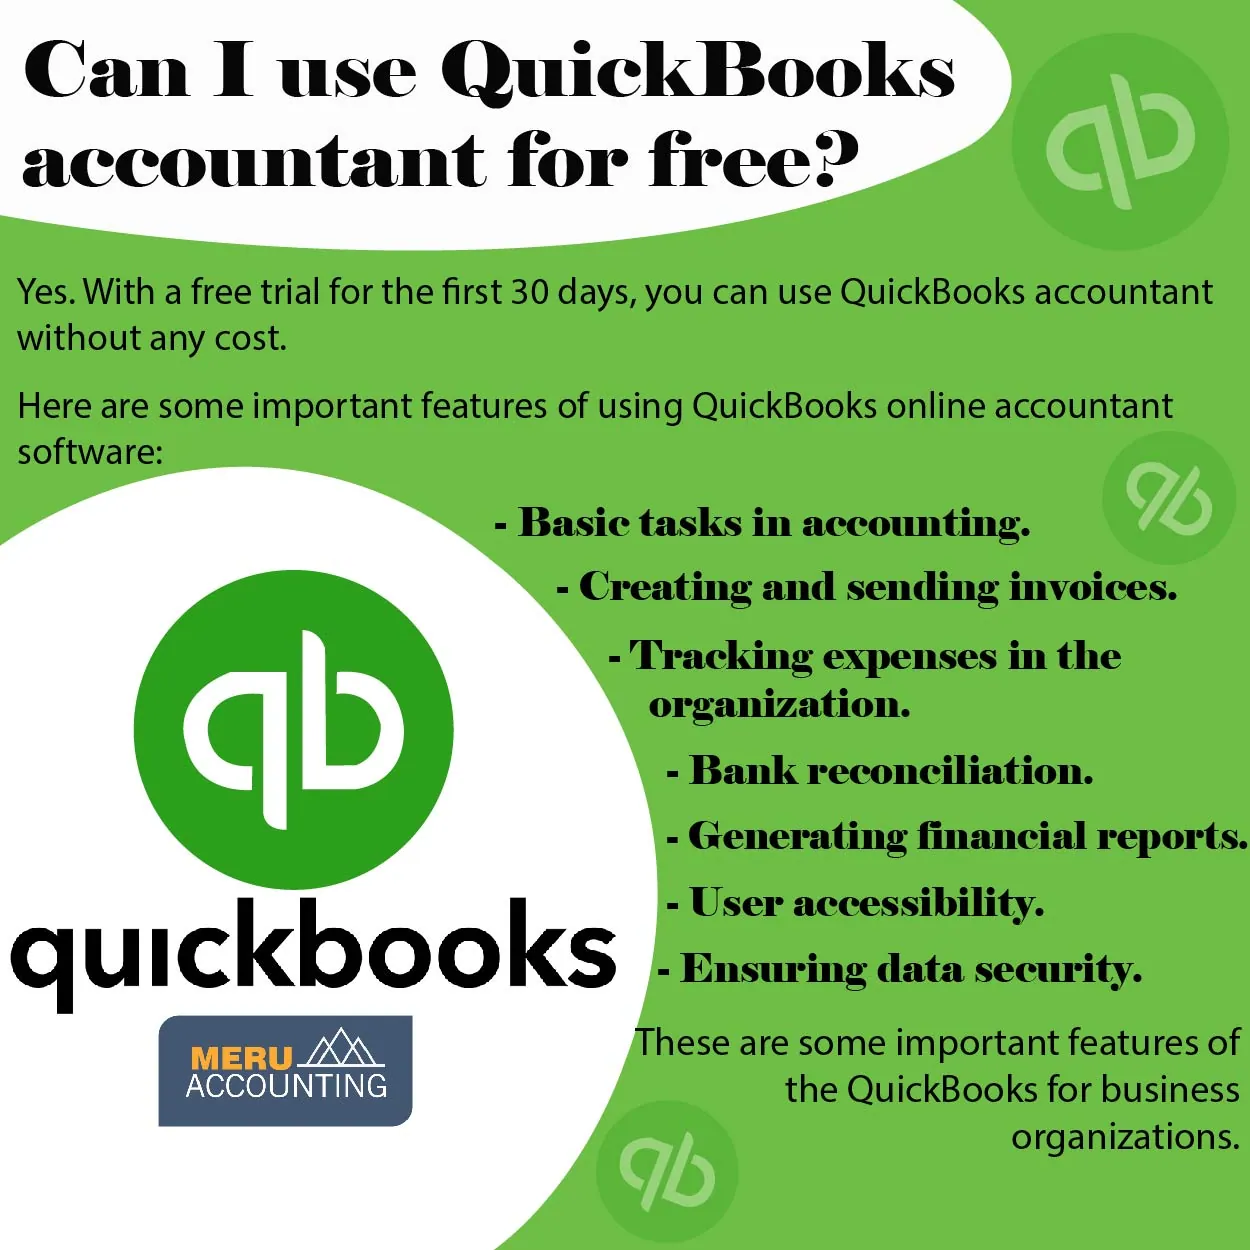 QuickBooks accountants